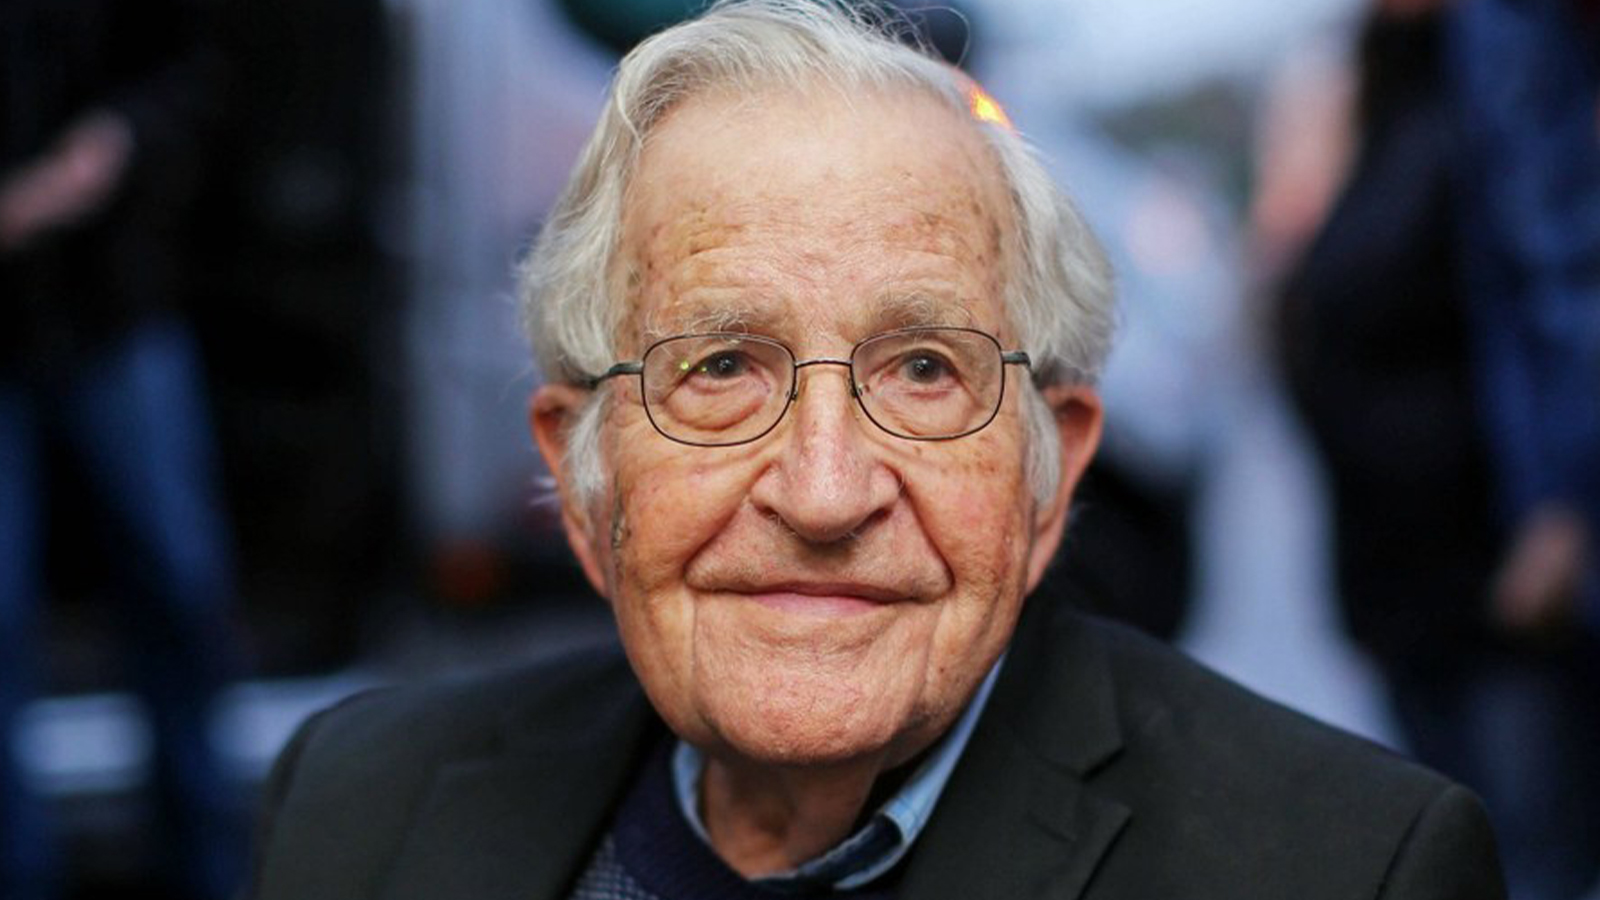 Ünlü düşünür Chomsky'den üzücü haber... "Yürüyemiyor, konuşamıyor"